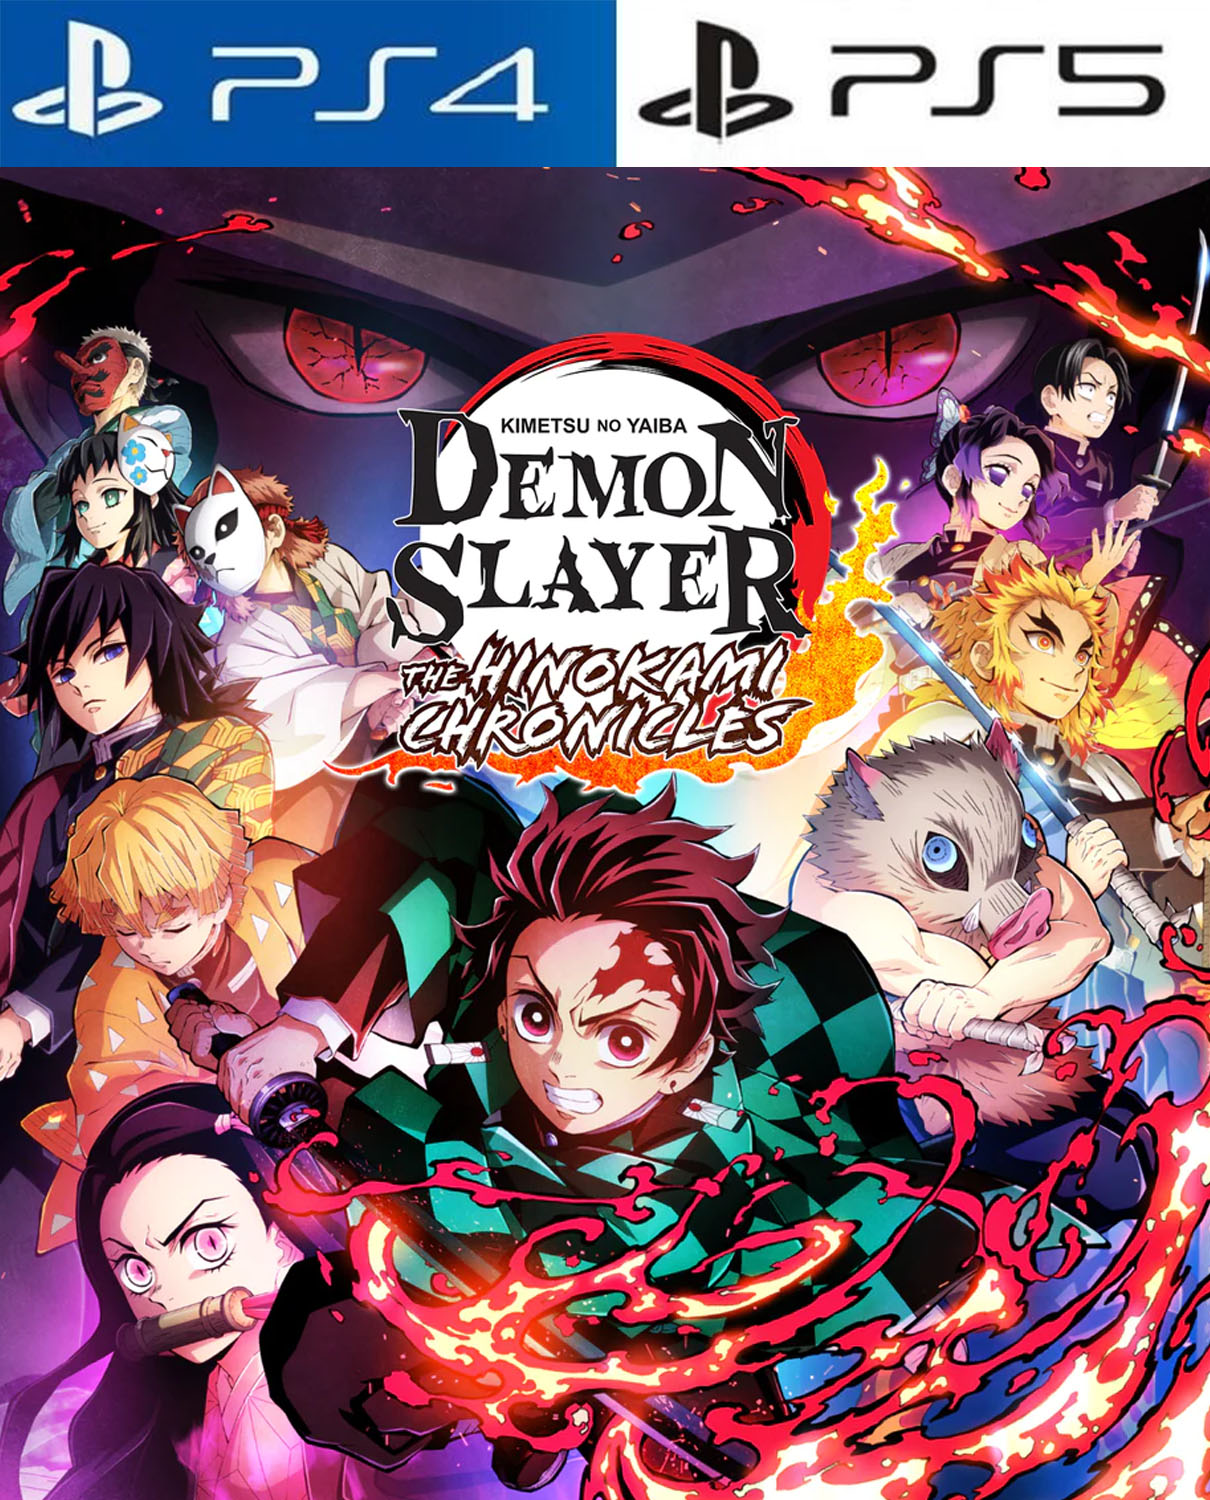 Demon Slayer via Google drive #Link na descrição 